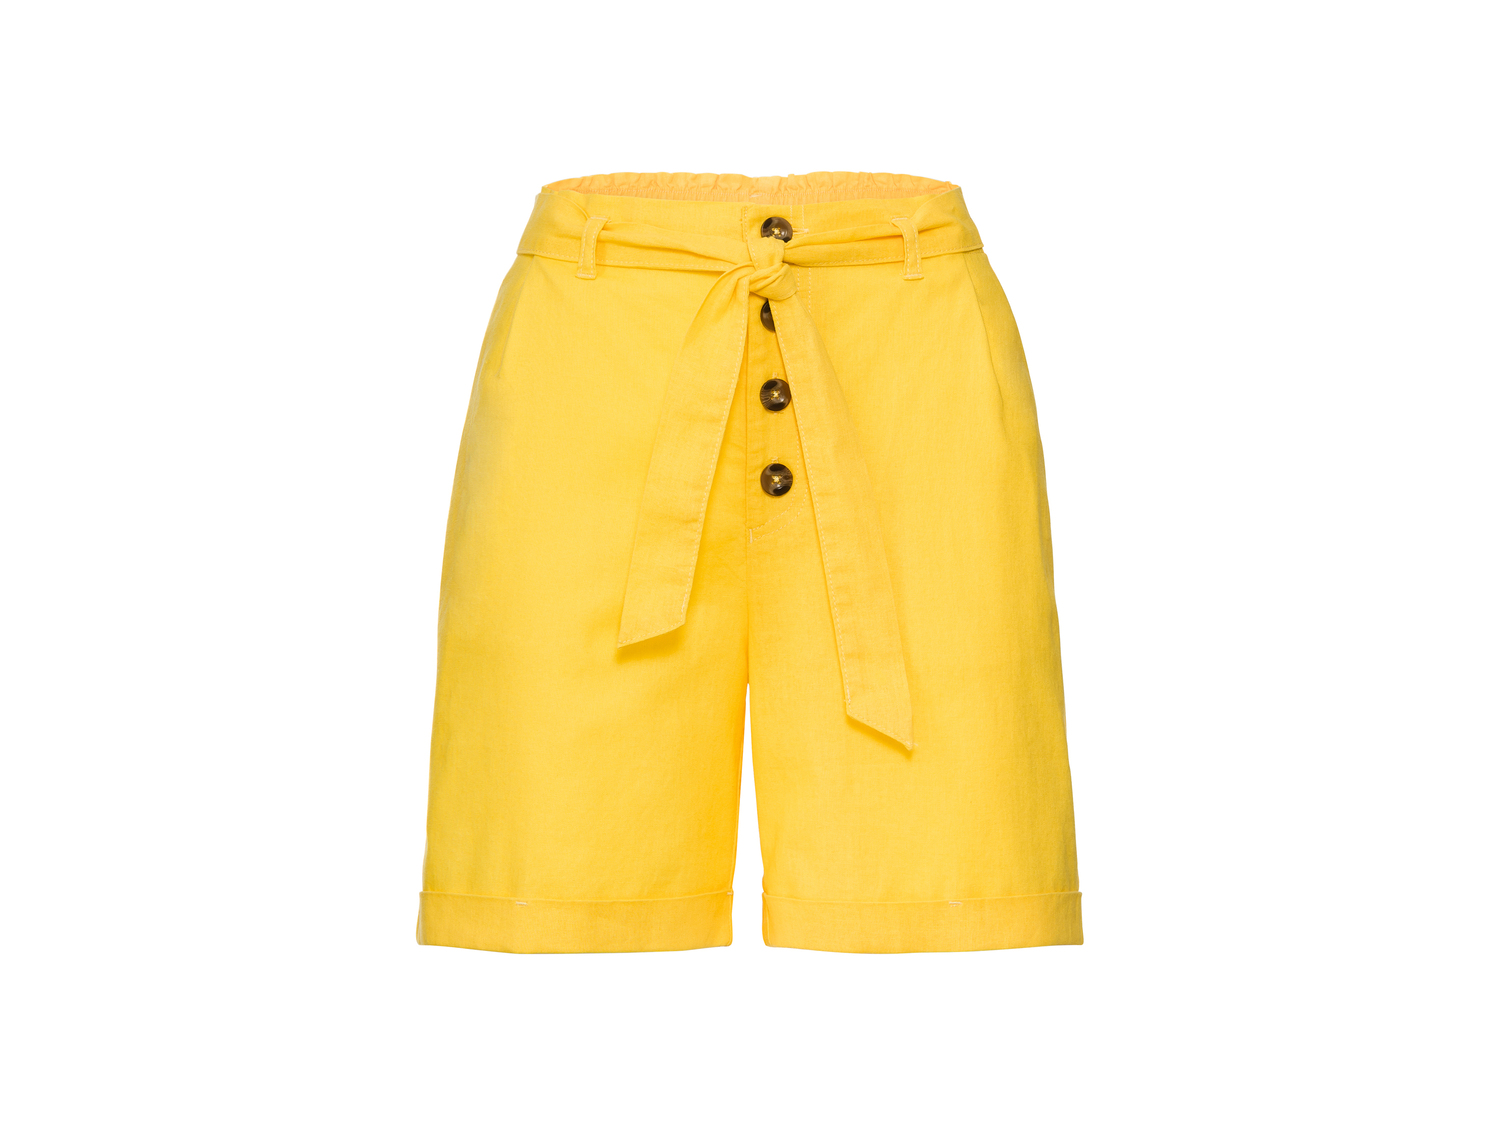 Shorts in lino da donna Esmara, prezzo 7.99 &#8364; 
Misure: 38-46
Taglie disponibili

Caratteristiche

- ...